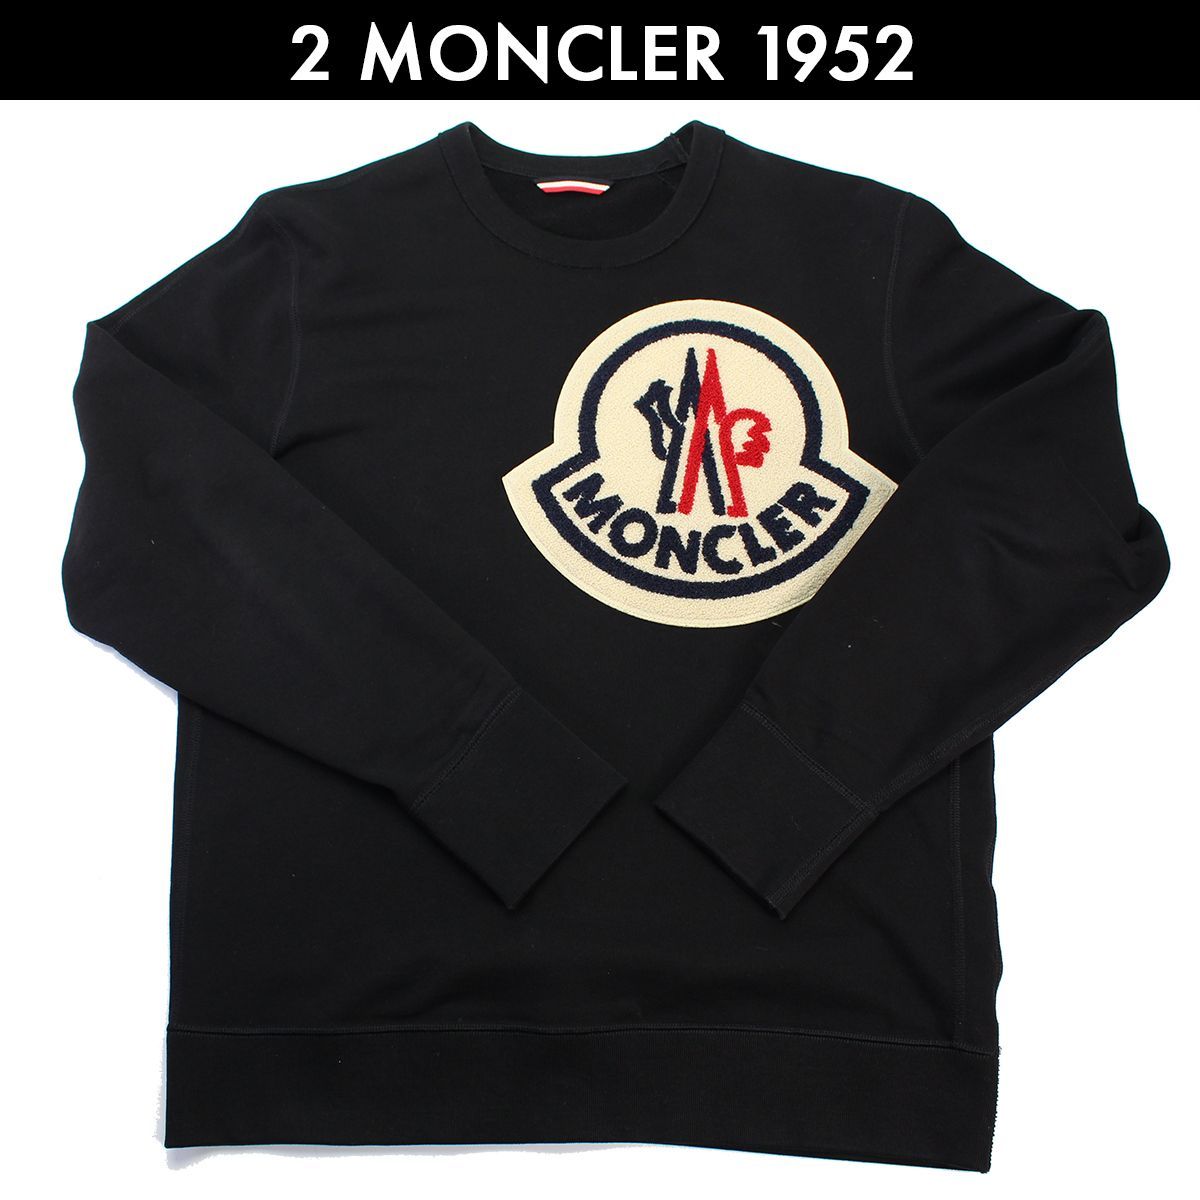 モンクレール ジーニアス MONCLER GENIUS 2 MONCLER 1952 ビッグロゴ